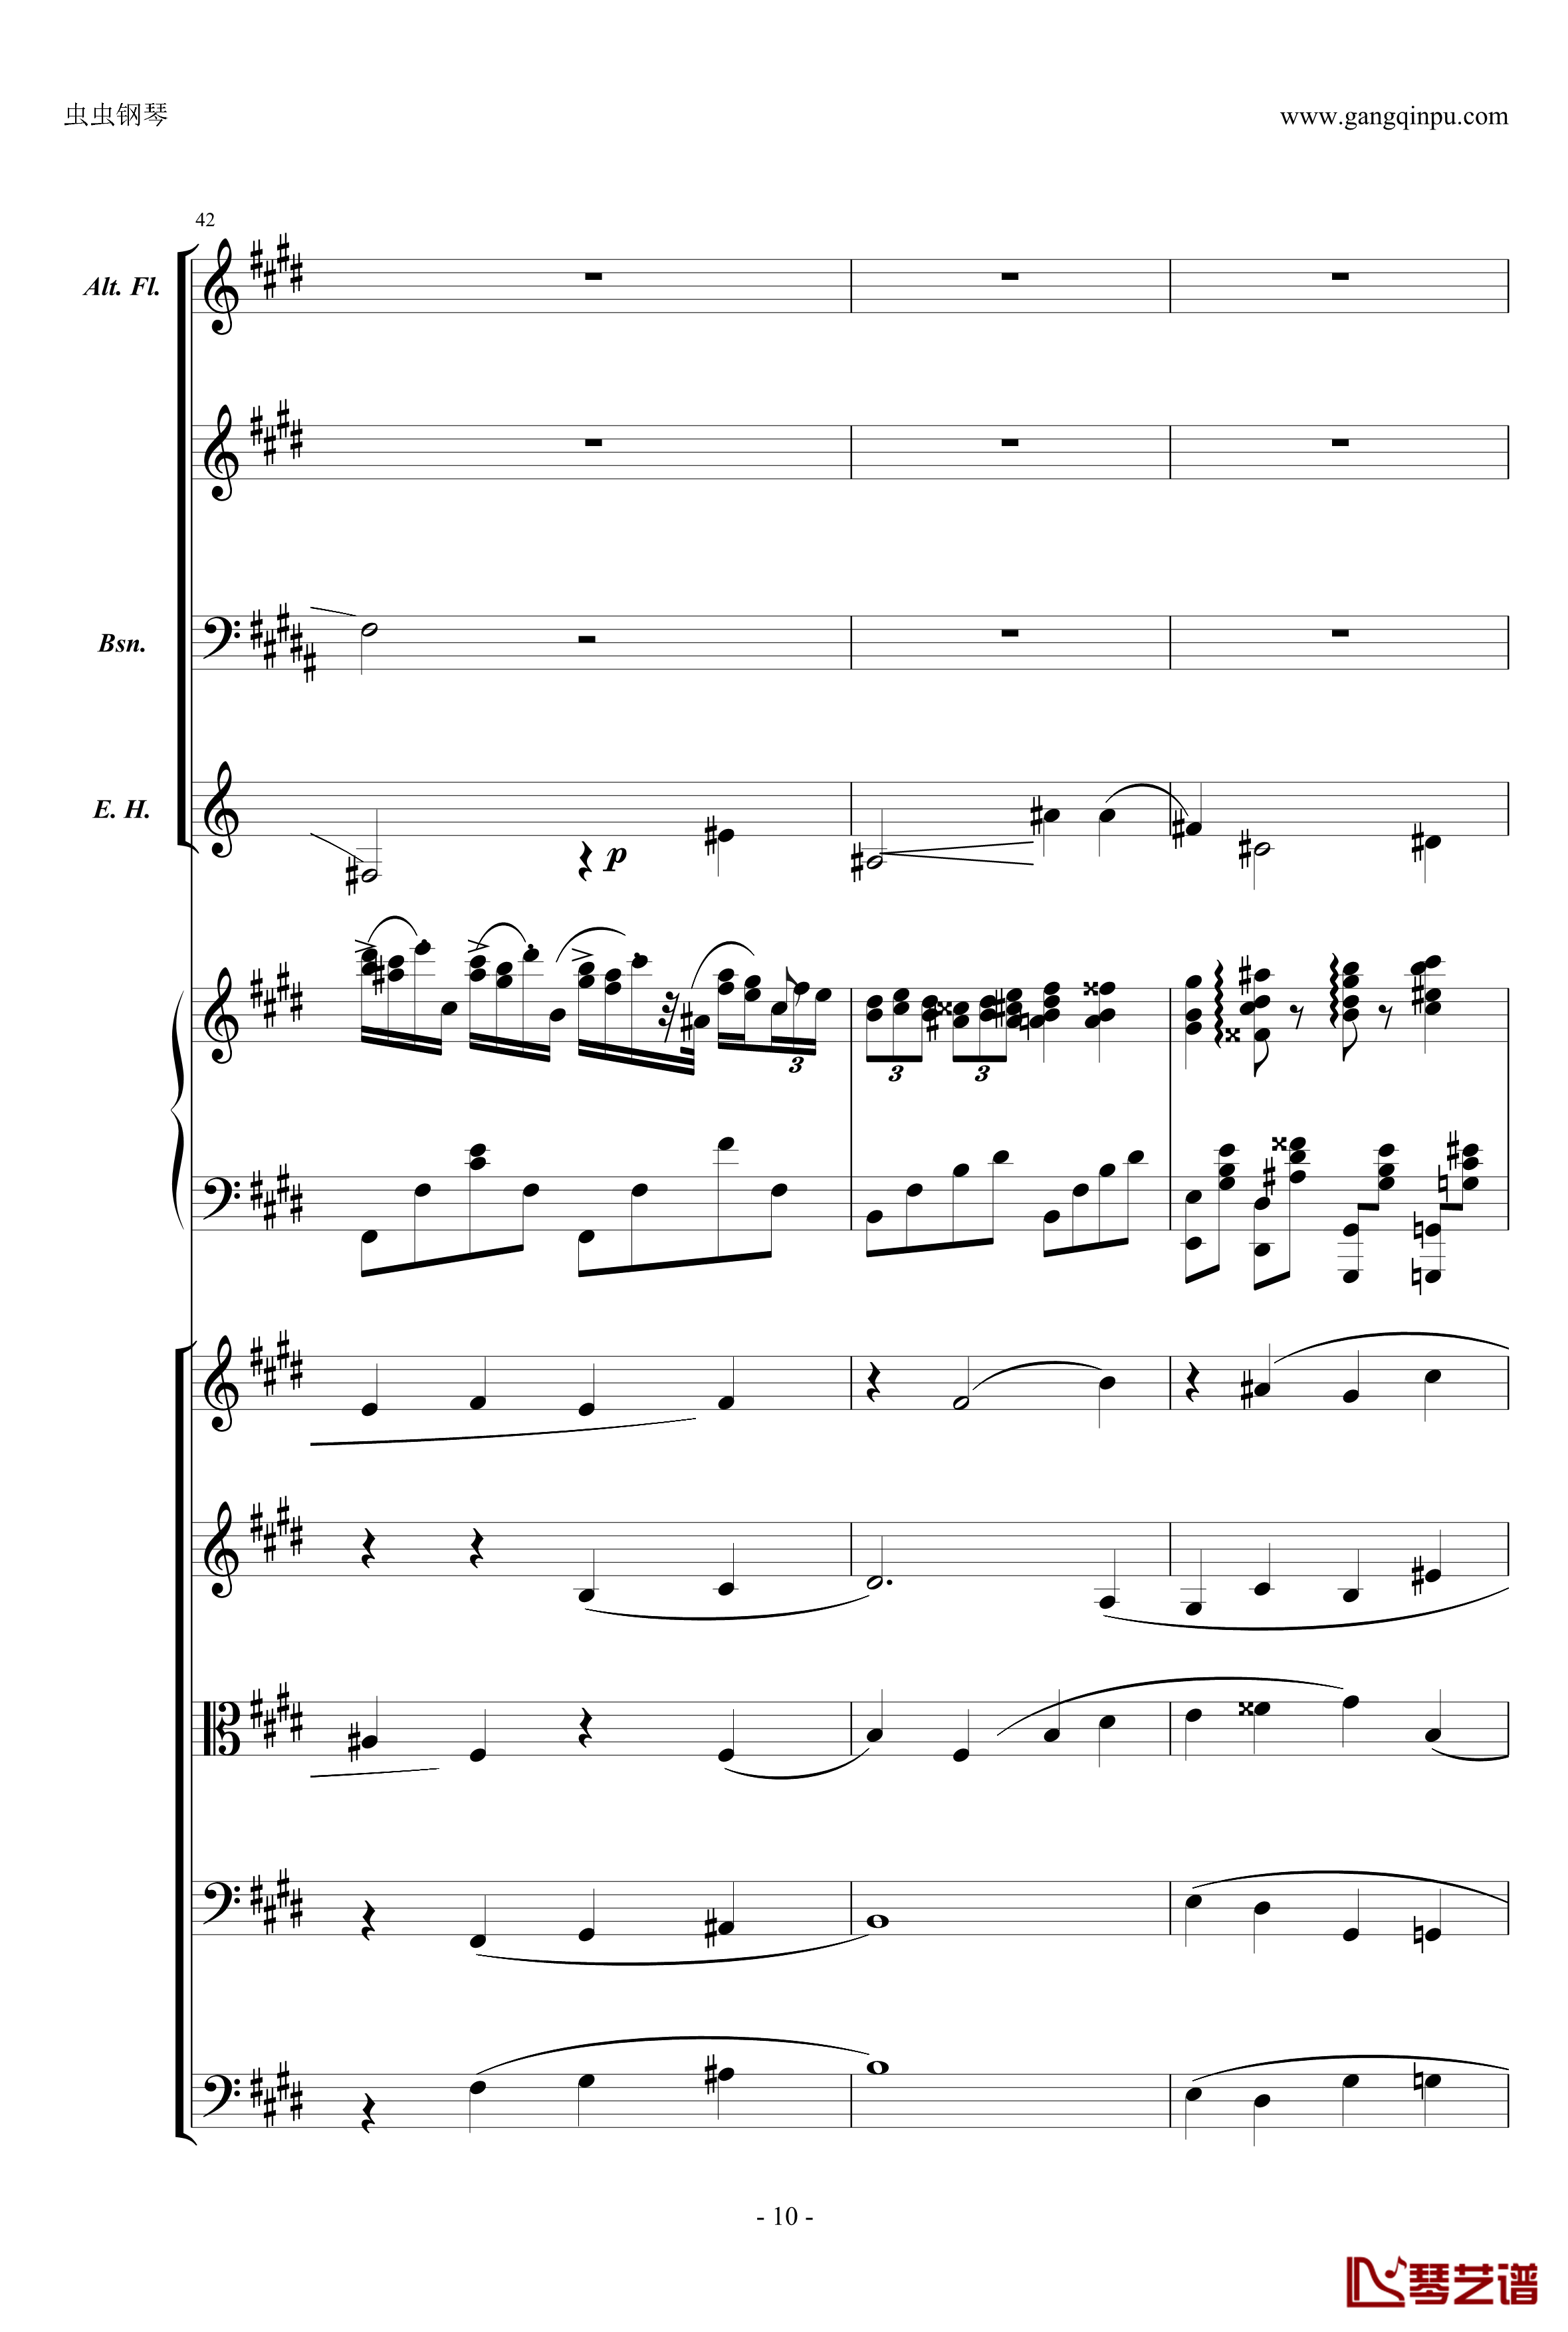 萧邦第一钢琴协奏曲第二乐章钢琴谱-肖邦-chopin10